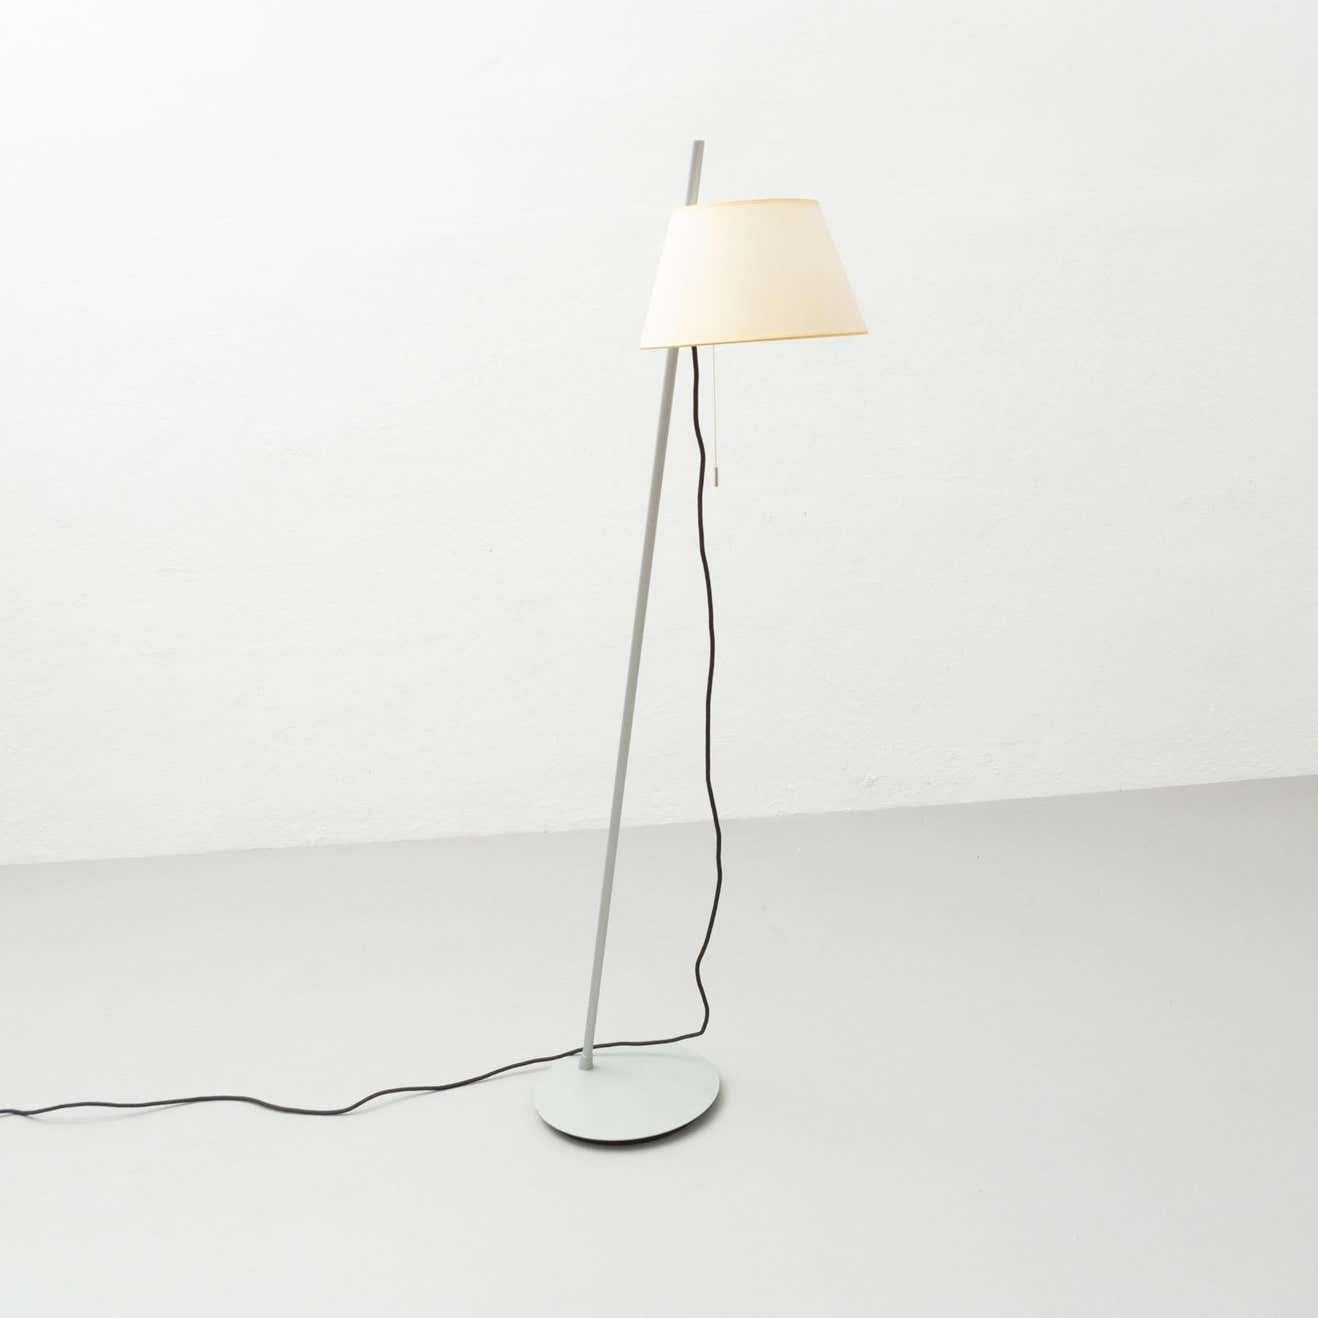 Estudio Blanch Simplisima Floor Lamp by Metalarte, circa 1970 For Sale 7